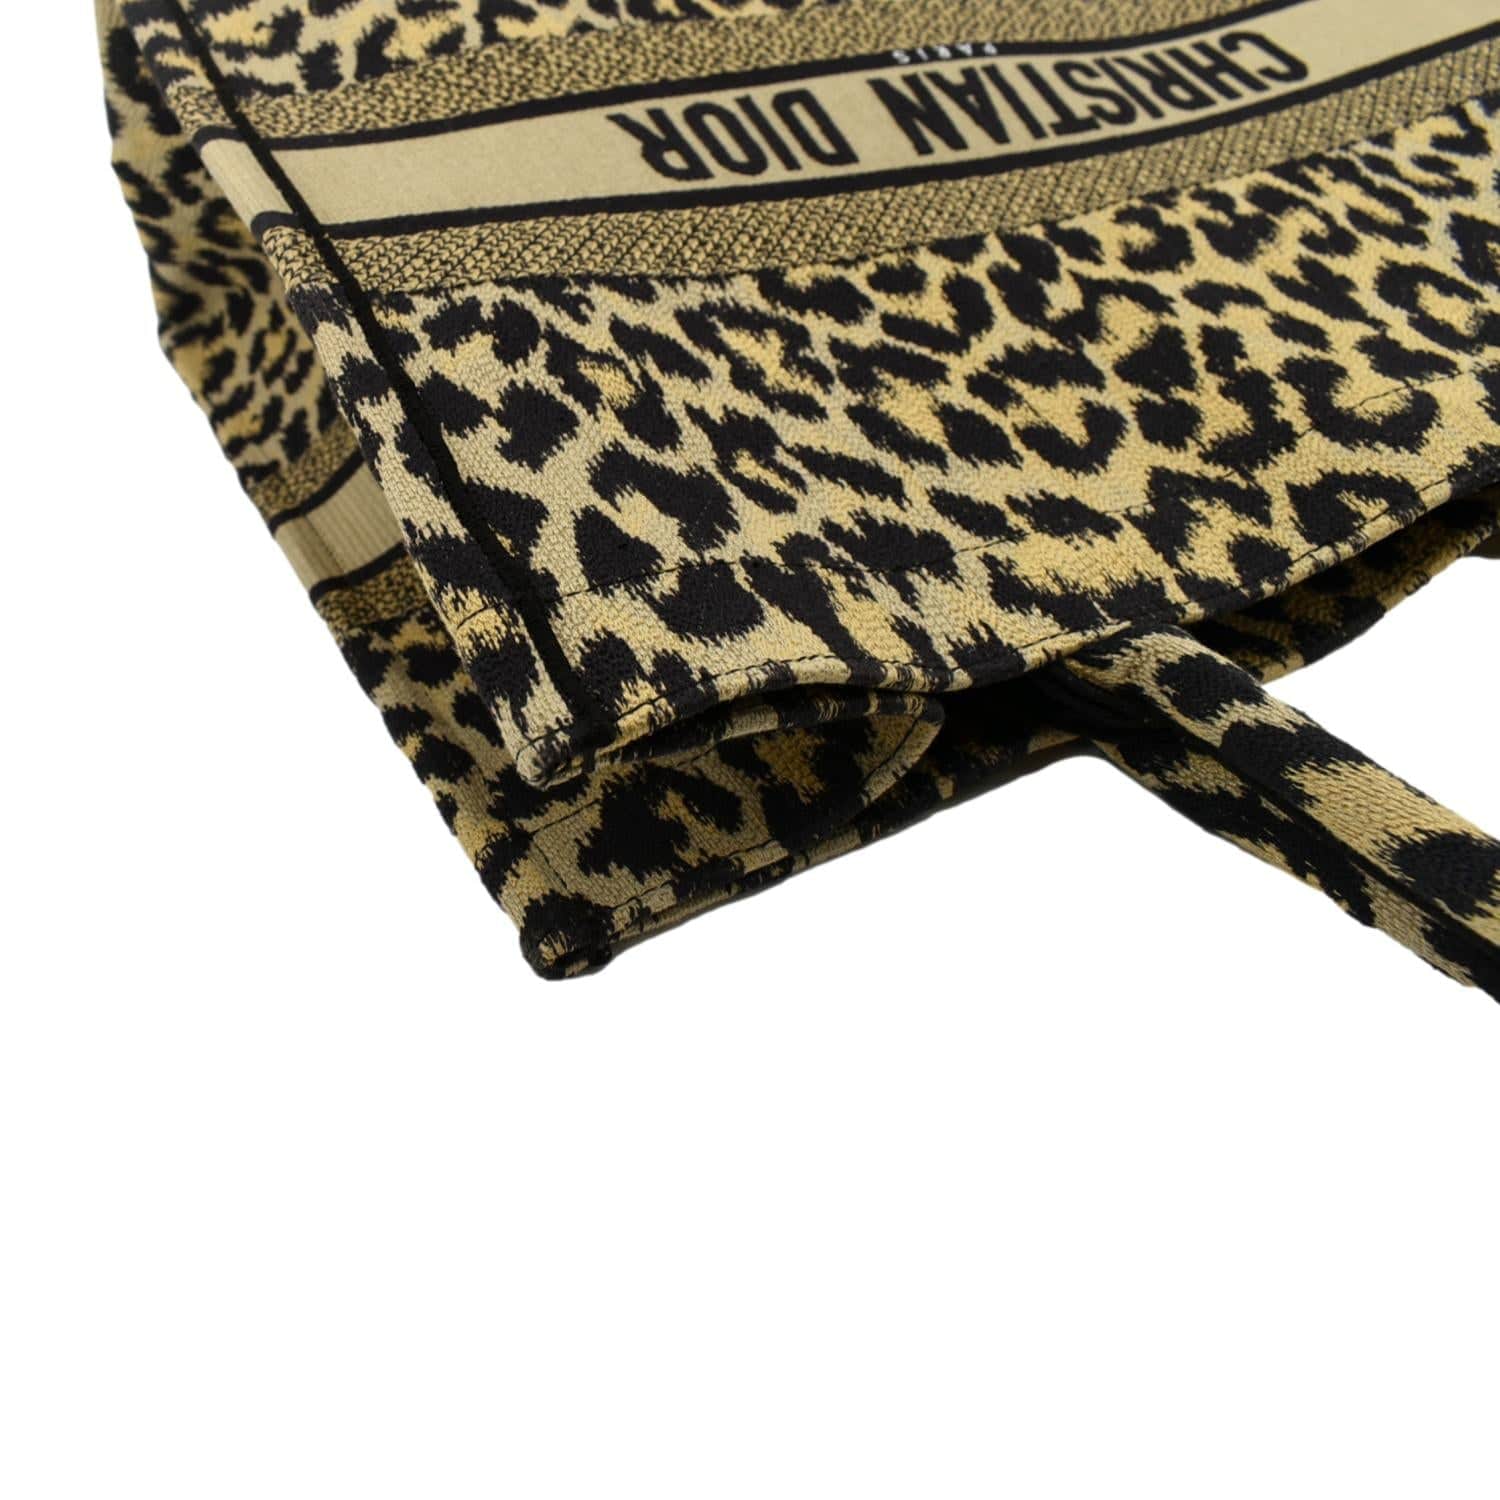 Christian Dior cheetah bag  Cheetah bag, Dior, Embroidered